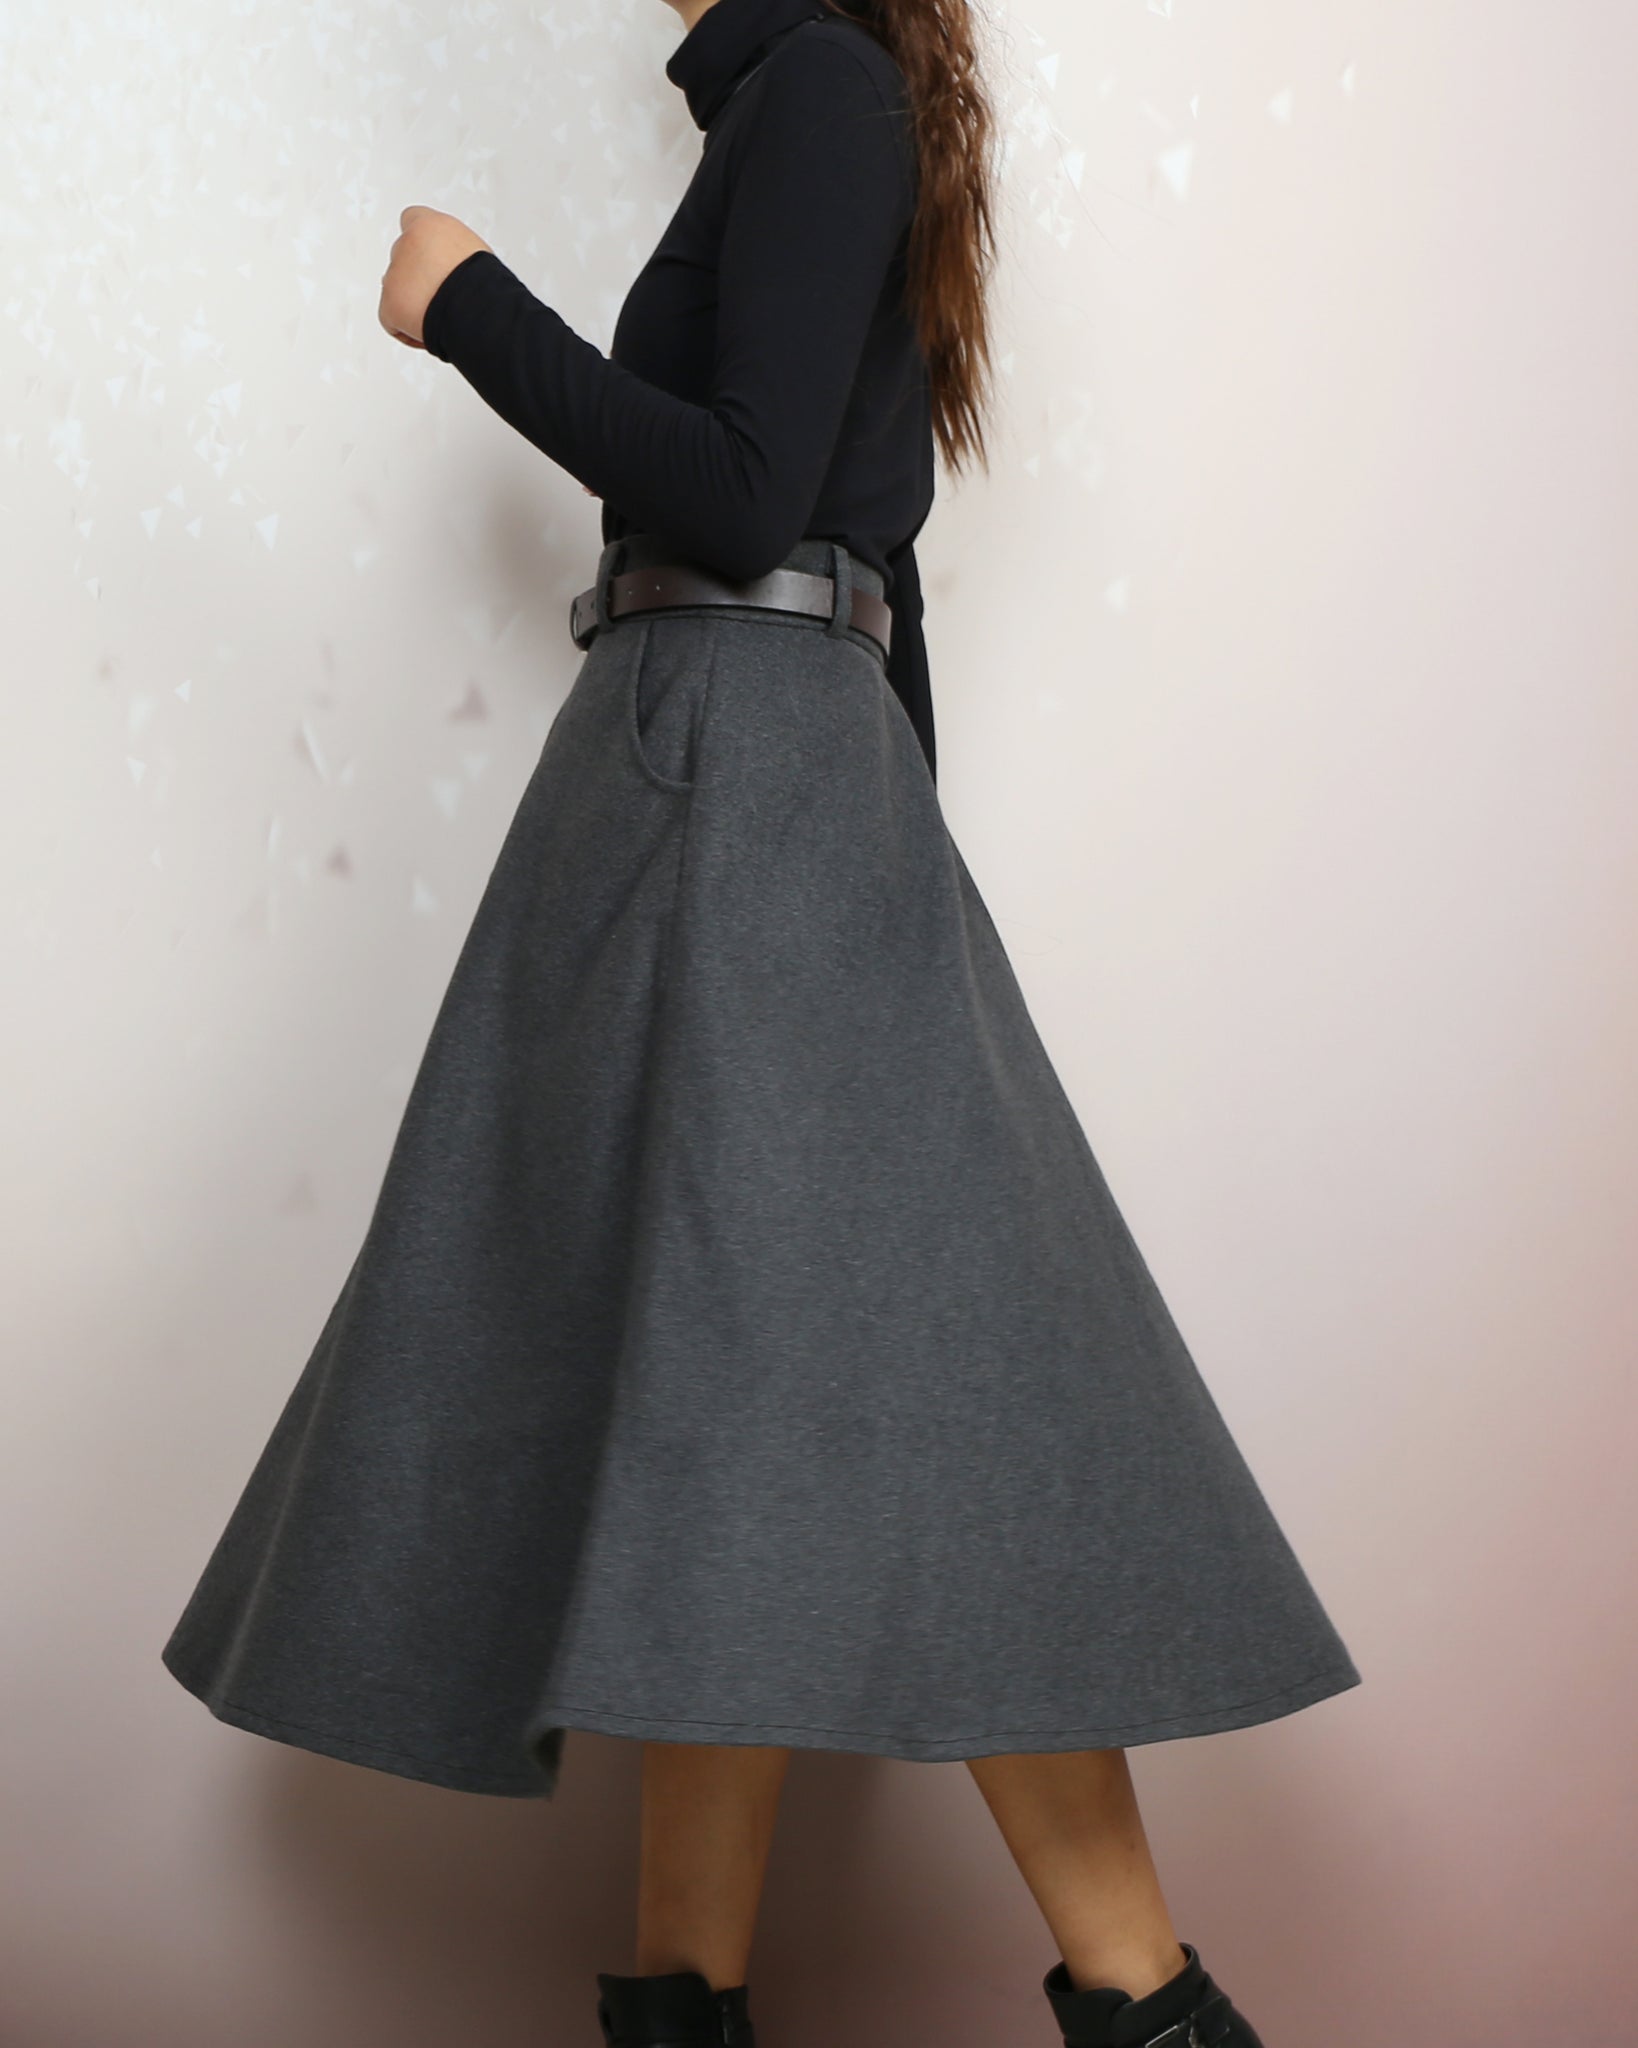 Midi skirt, Winter skirt, Wool skirt with belt, custom made skirt